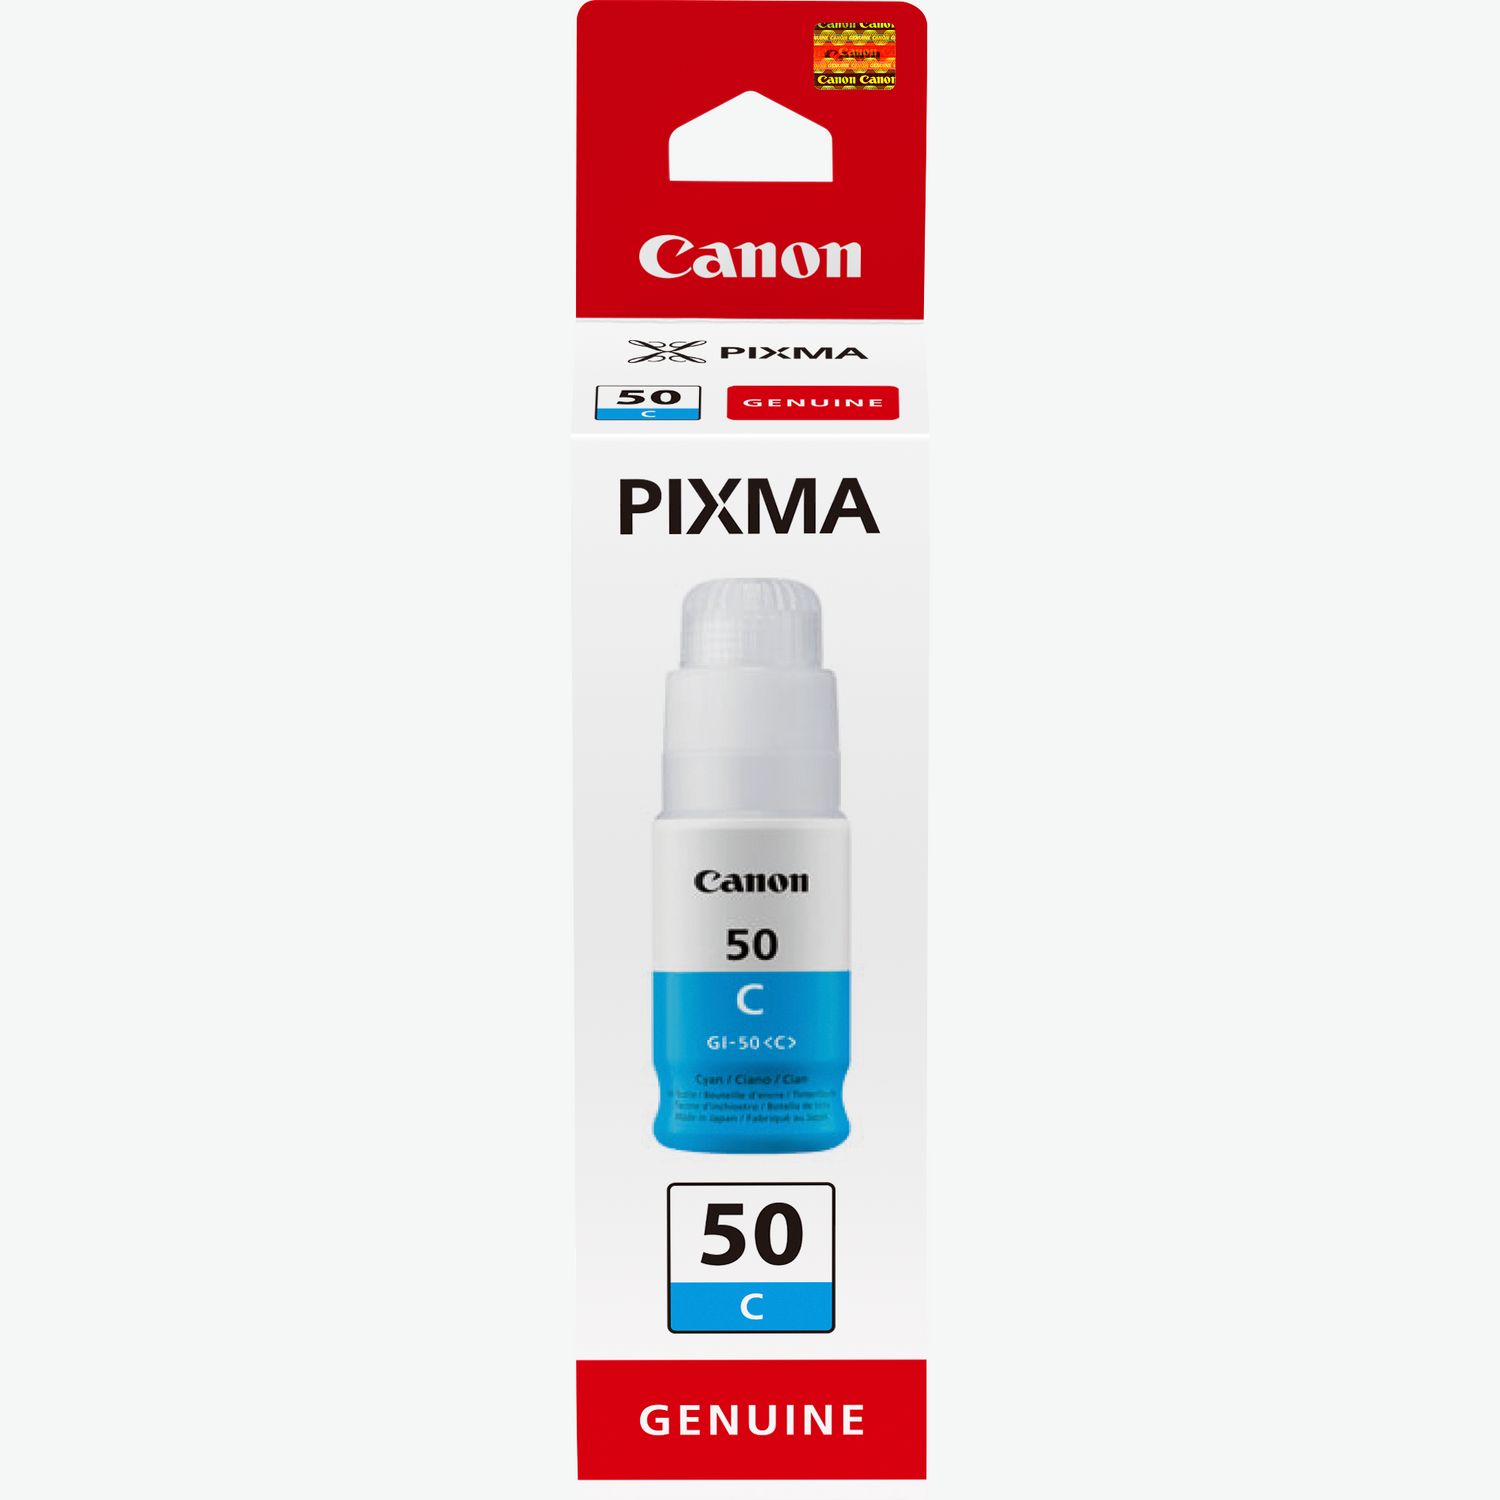 Impresora multifunción de inyección de tinta recargable Canon PIXMA  MEGATANK G6050 - Impresora multifunción - Los mejores precios